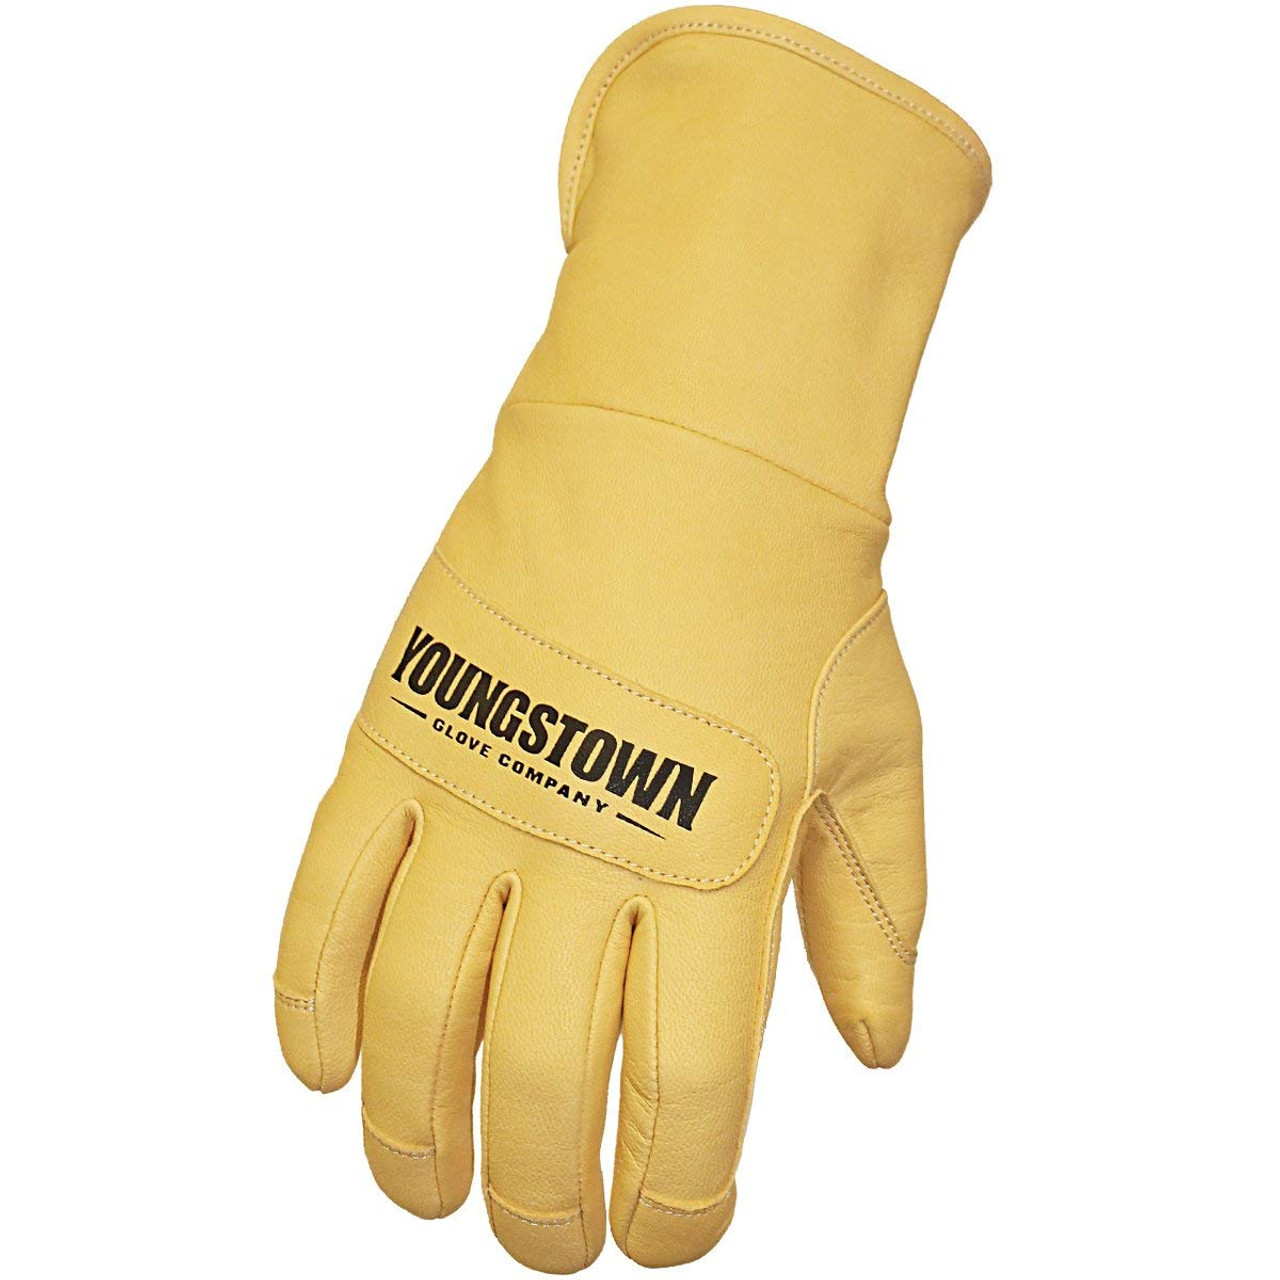 Youngstown Glove 11-3245-60-L Leather Utility Plus handsker, Large | Værktøjssalg